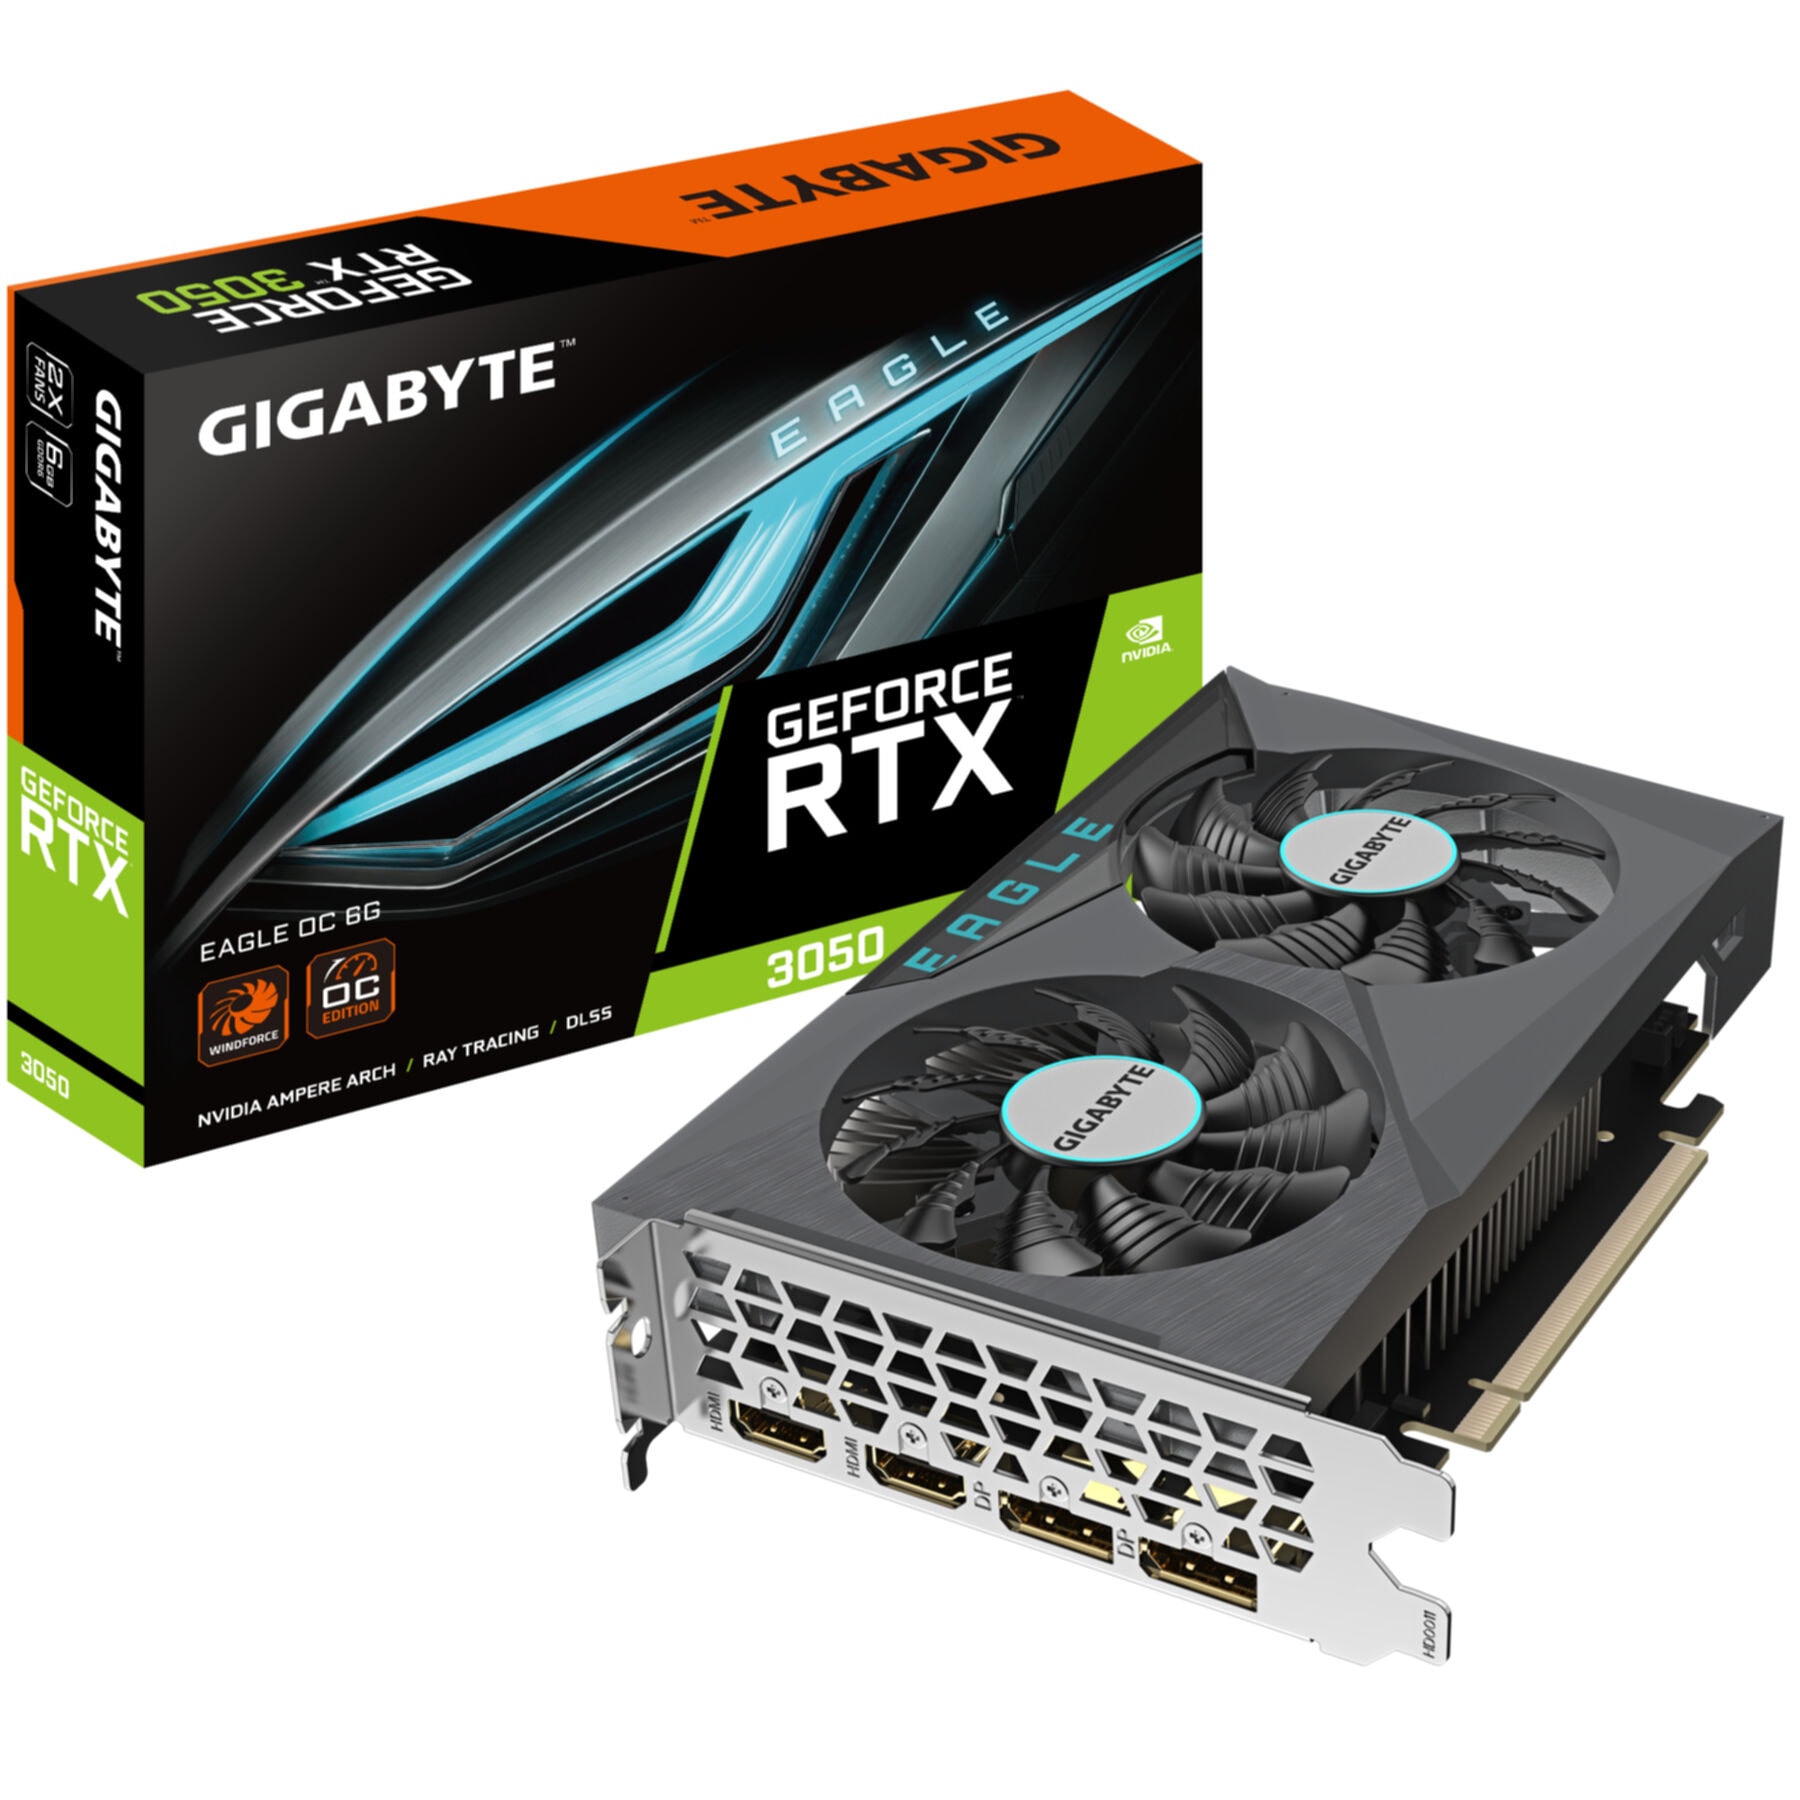 Gigabyte Grafikkarte »GeForce RTX 3050 EAGLE OC 6G«